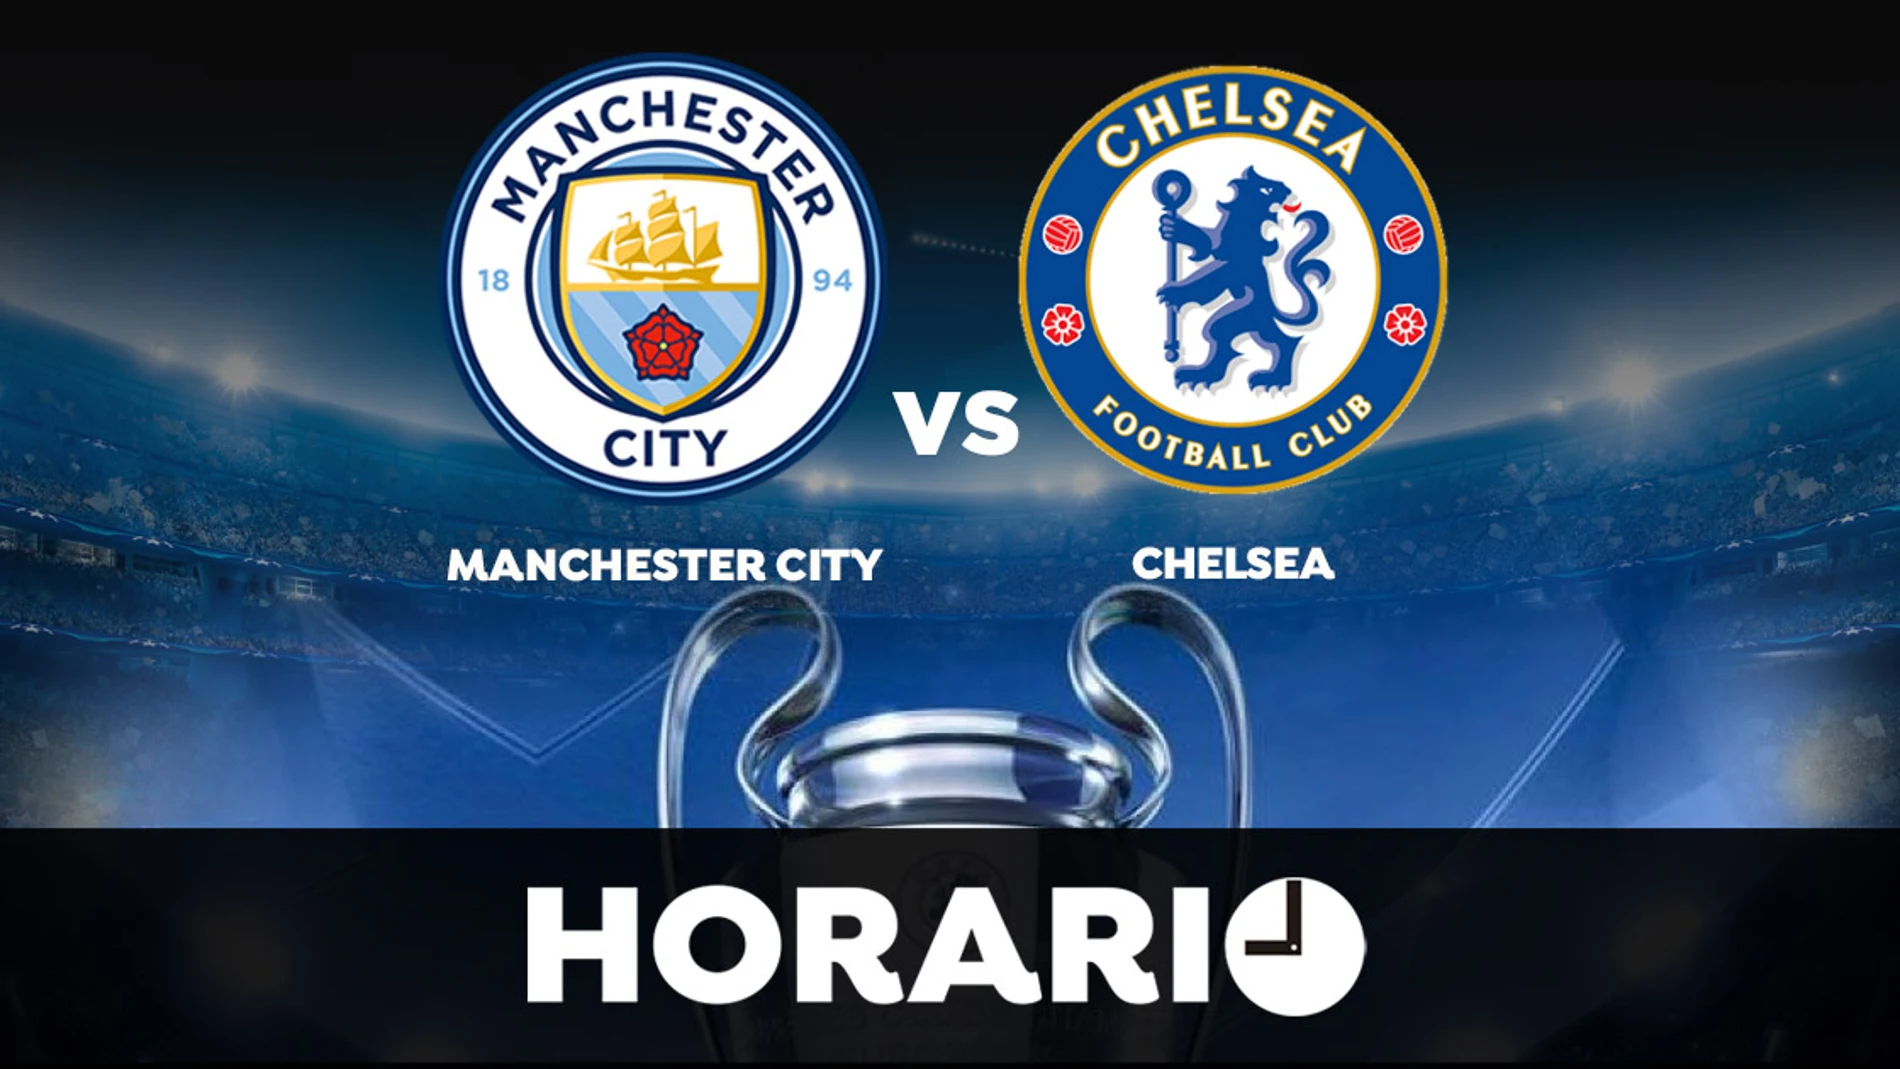 Manchester City - Chelsea: Horario y dónde ver la final de la Champions League en directo